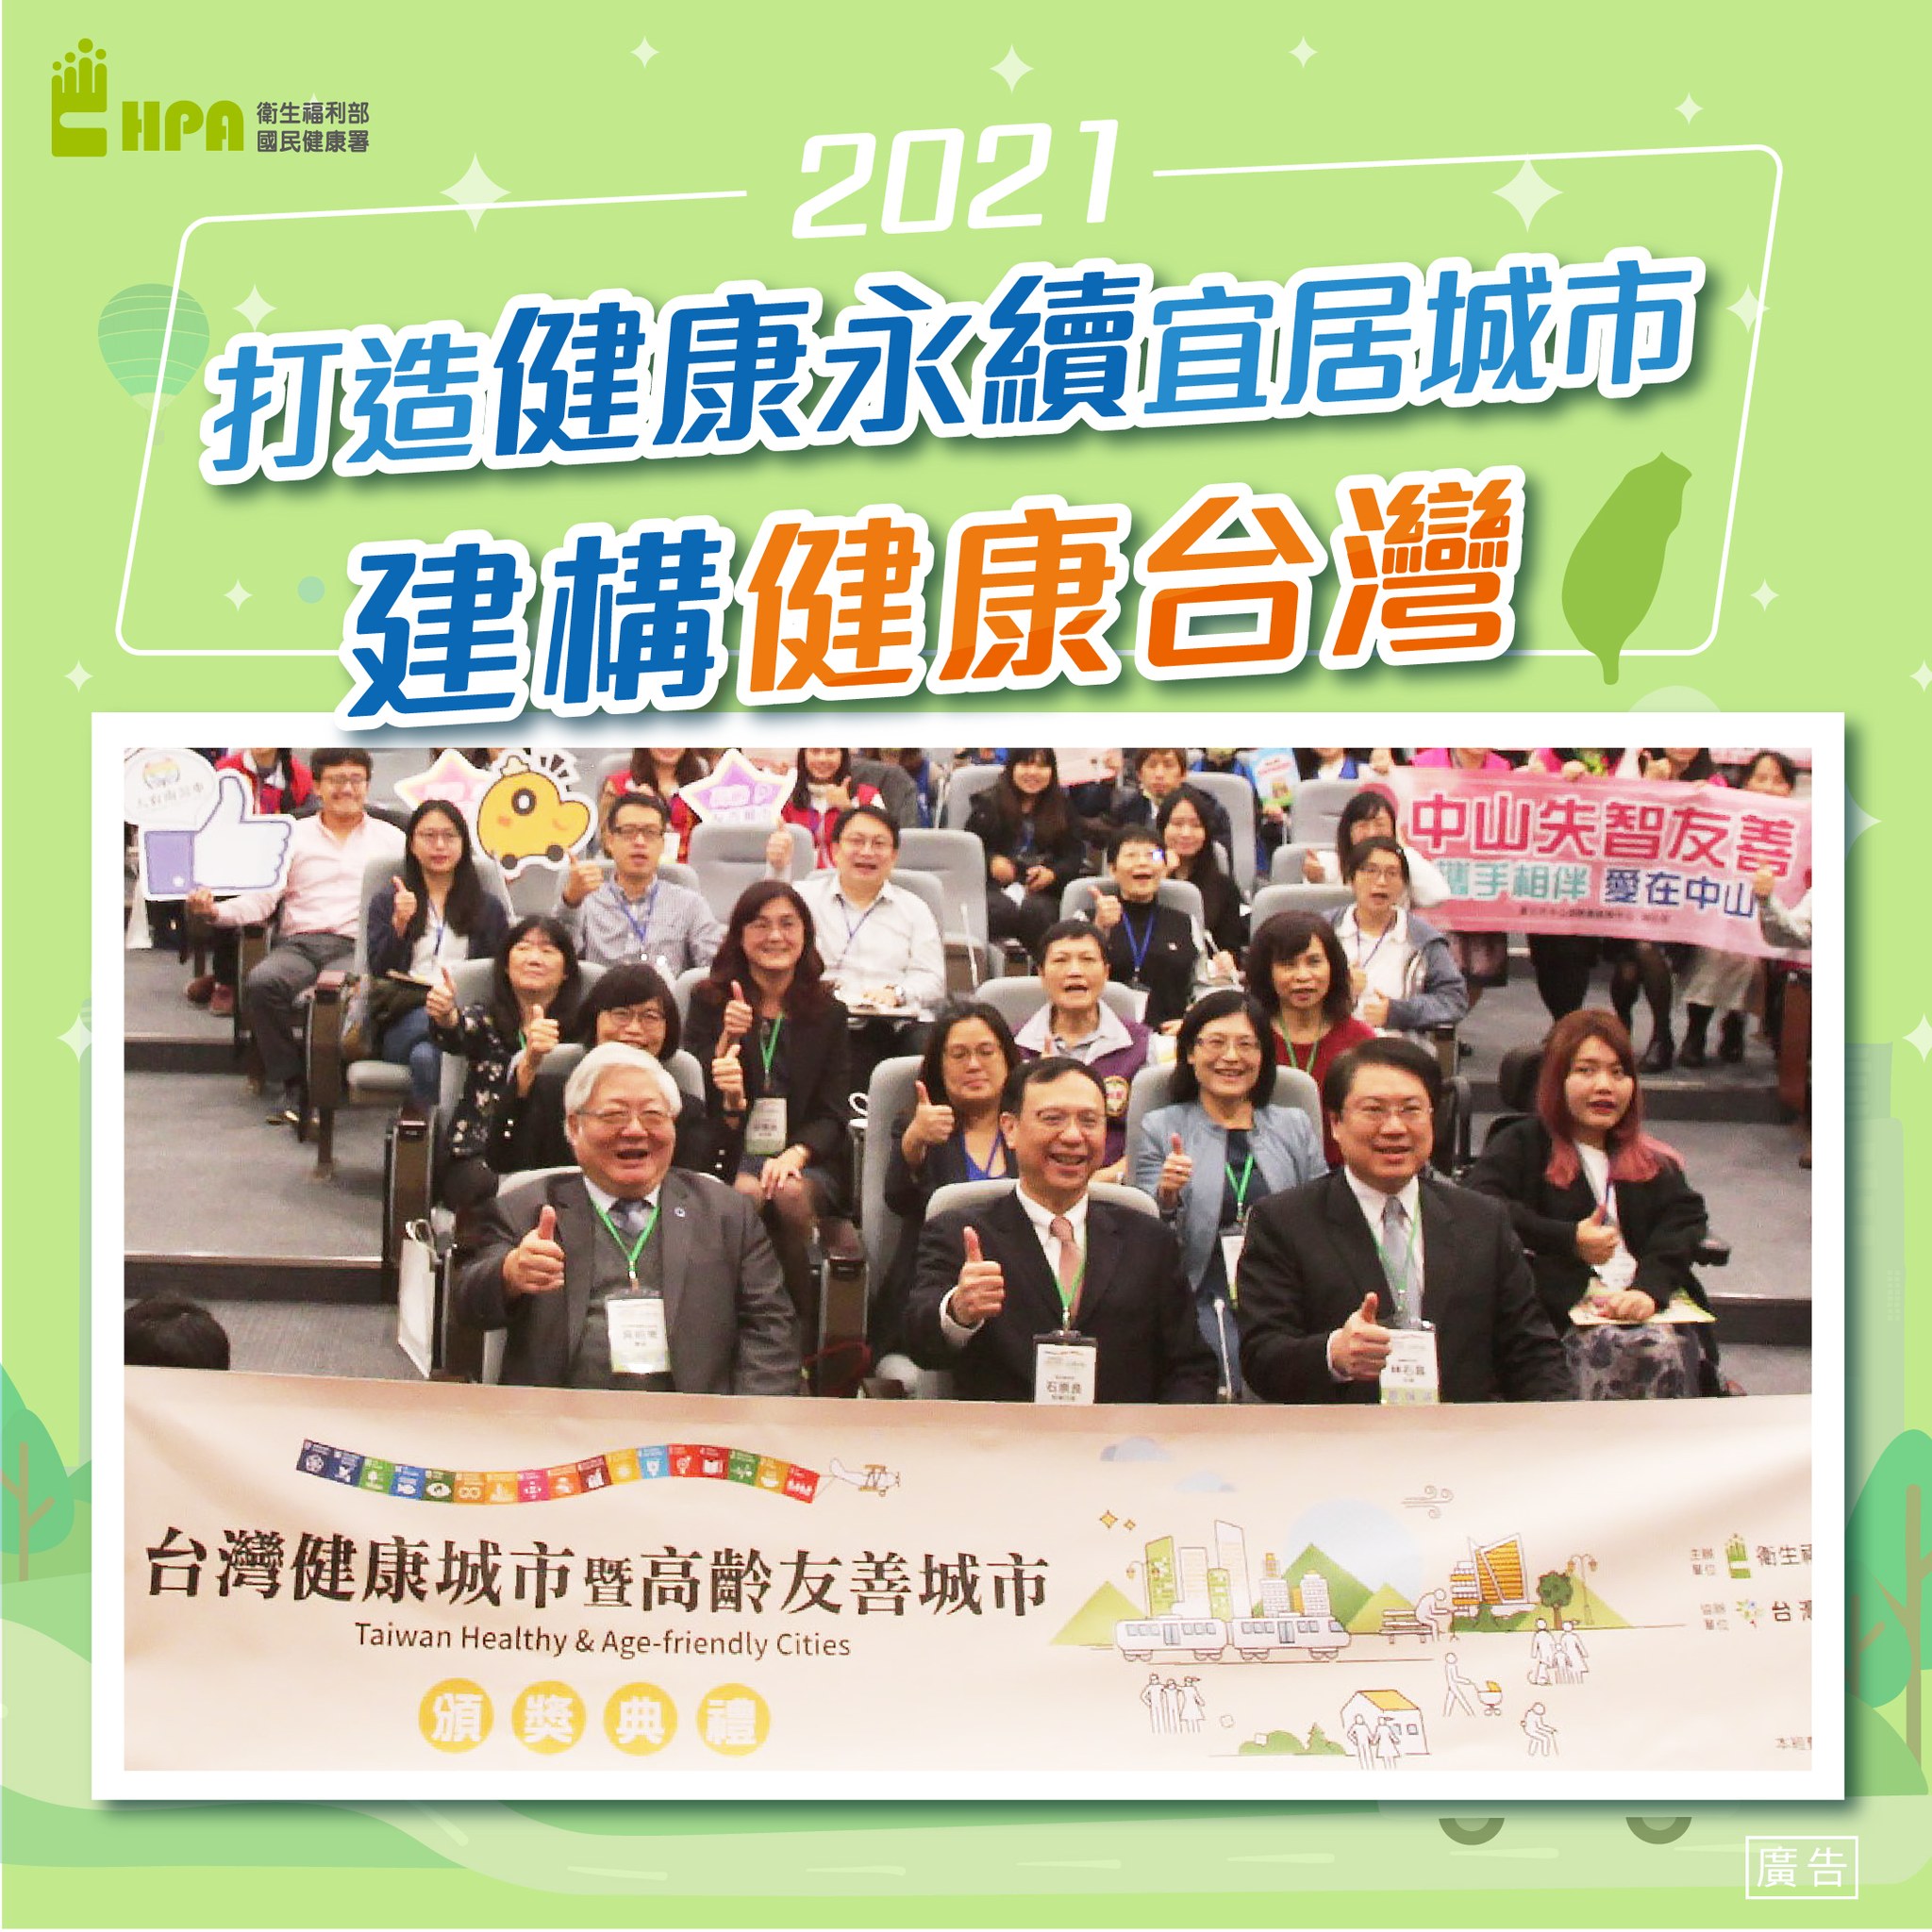 「2021台灣健康城市暨高齡友善城市」頒獎典禮 整合在地化資源 展現城市新風貌